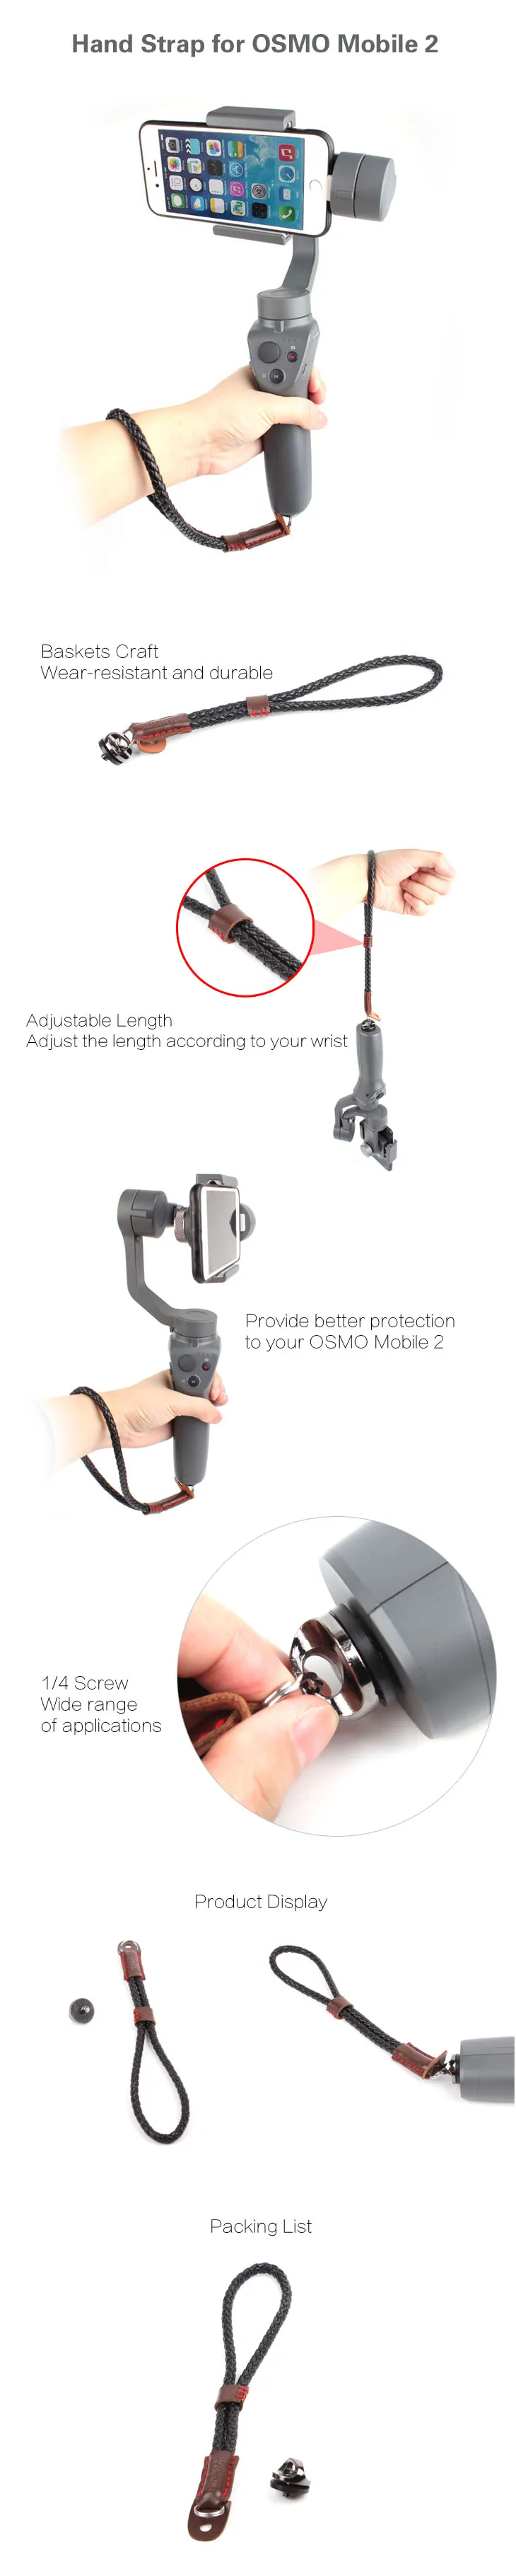 Аксессуары для самоделок/ремешок для запястья слинг с 4/1 винтом для DJI OSMO Mobile 2 корзины ремесло рукоятка линия